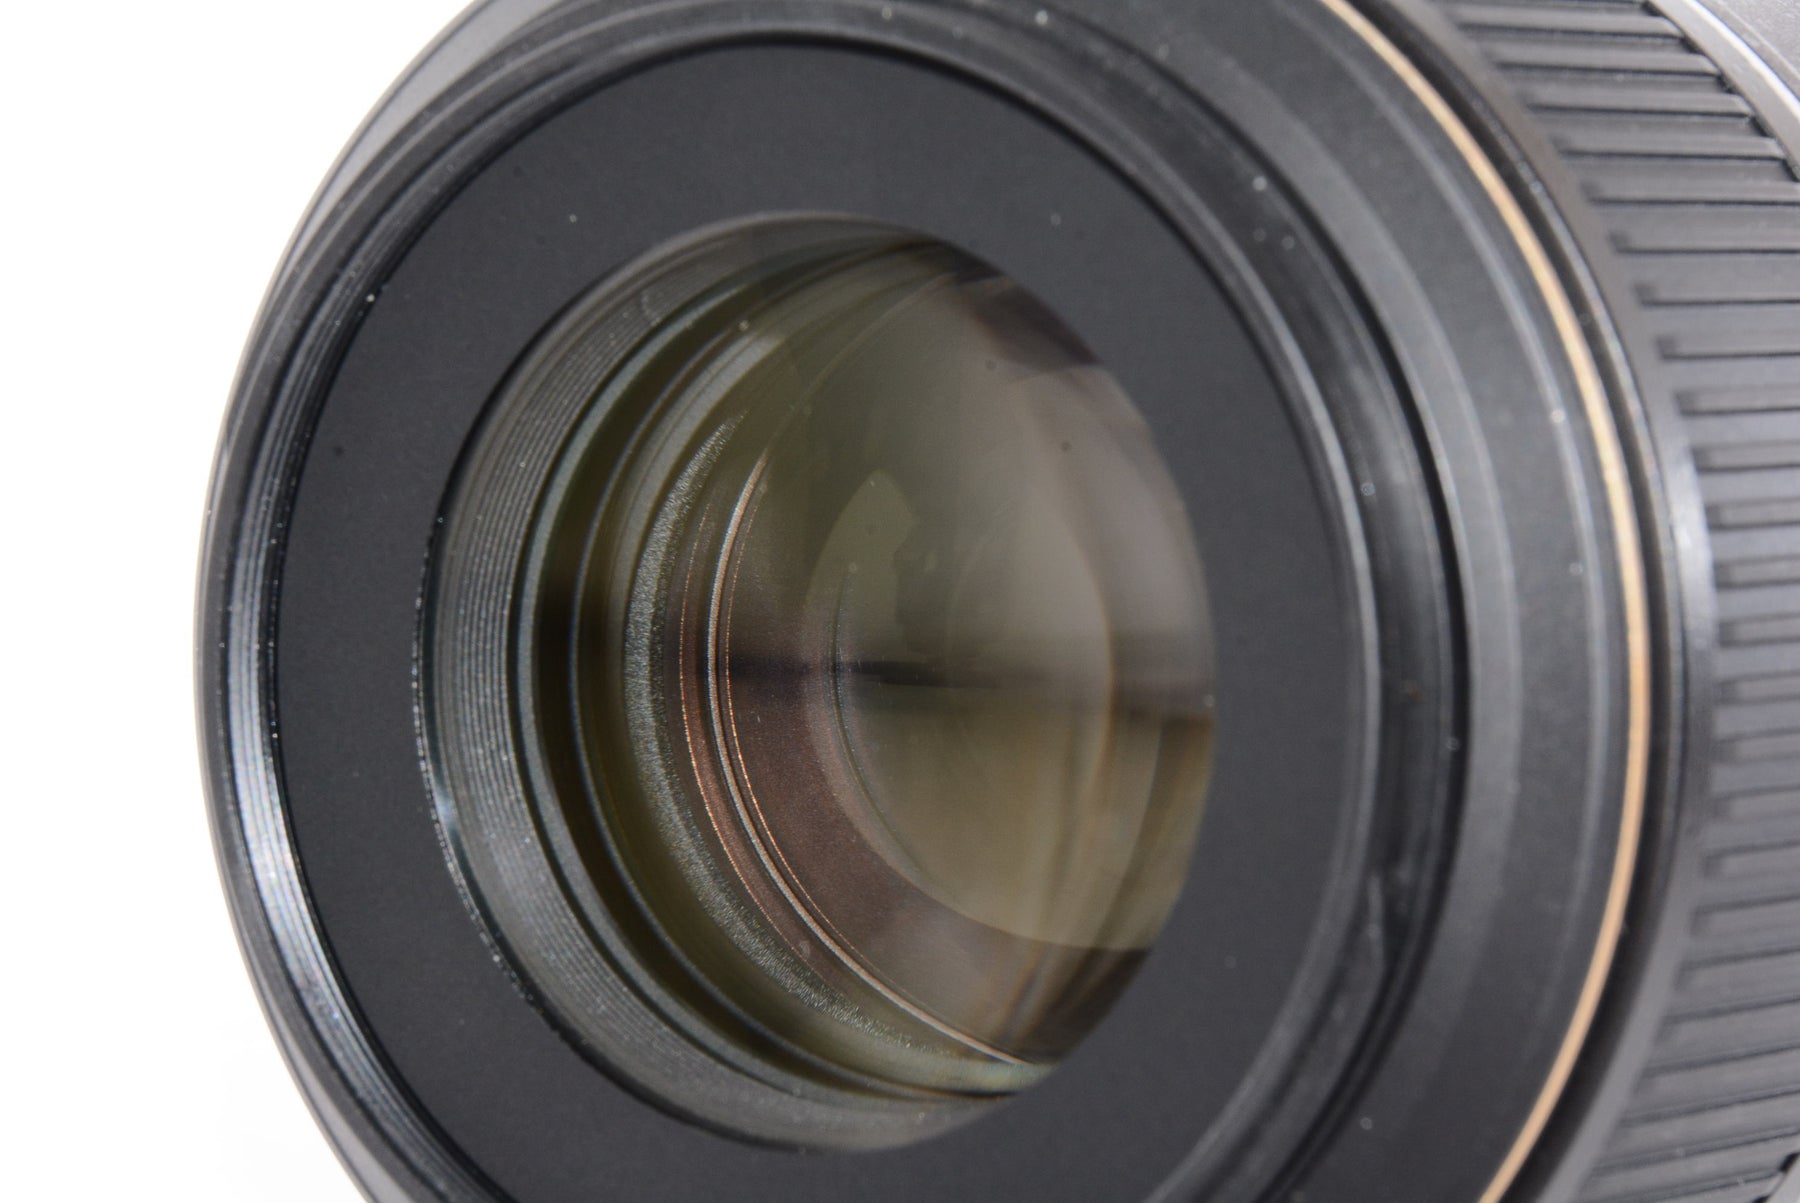 【外観特上級】Nikon 単焦点マイクロレンズ AF-S VR Micro Nikkor 105mm f/2.8 G IF-ED フルサイズ対応